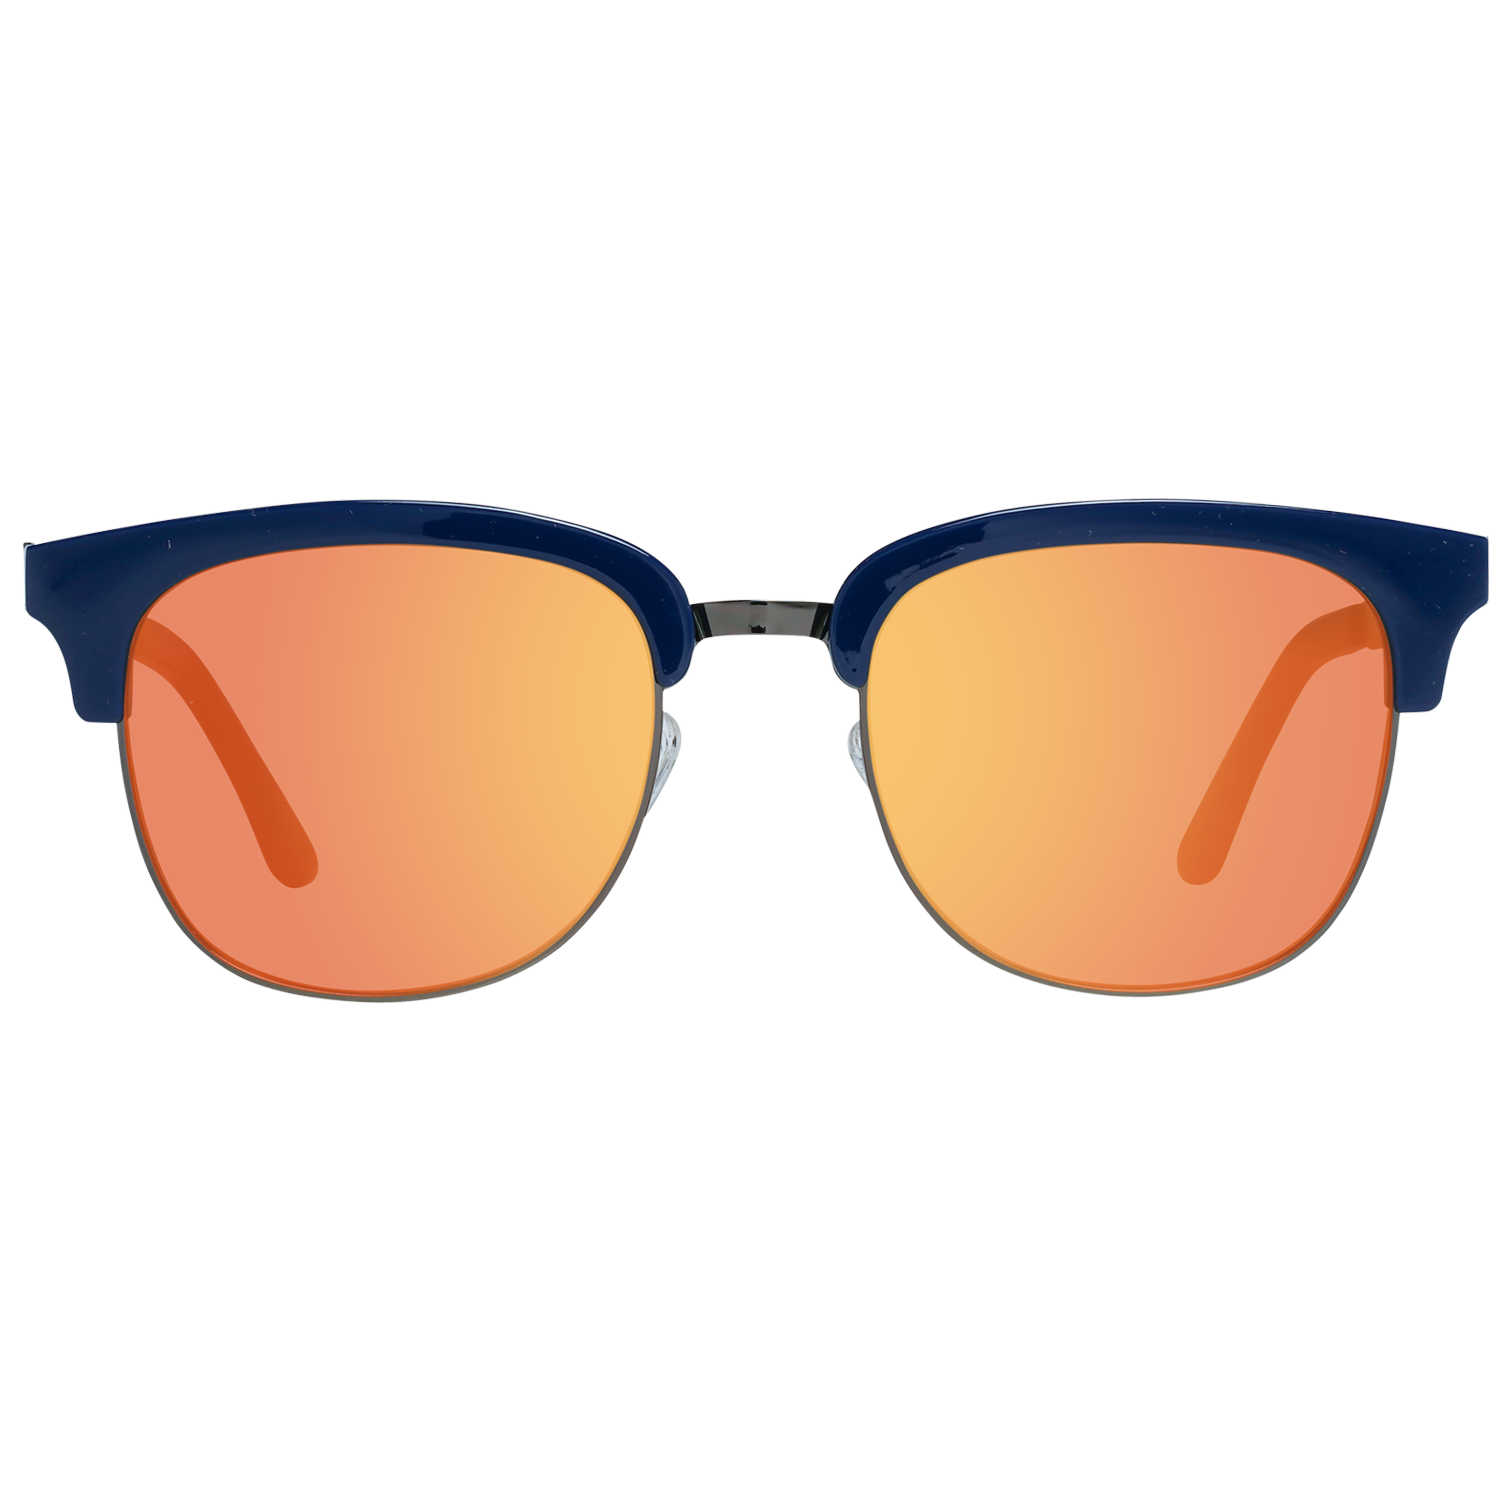 Spy Sunglasses Spy Sunglasses 6700000000053 Stout 51 Eyeglasses Eyewear UK USA Australia 